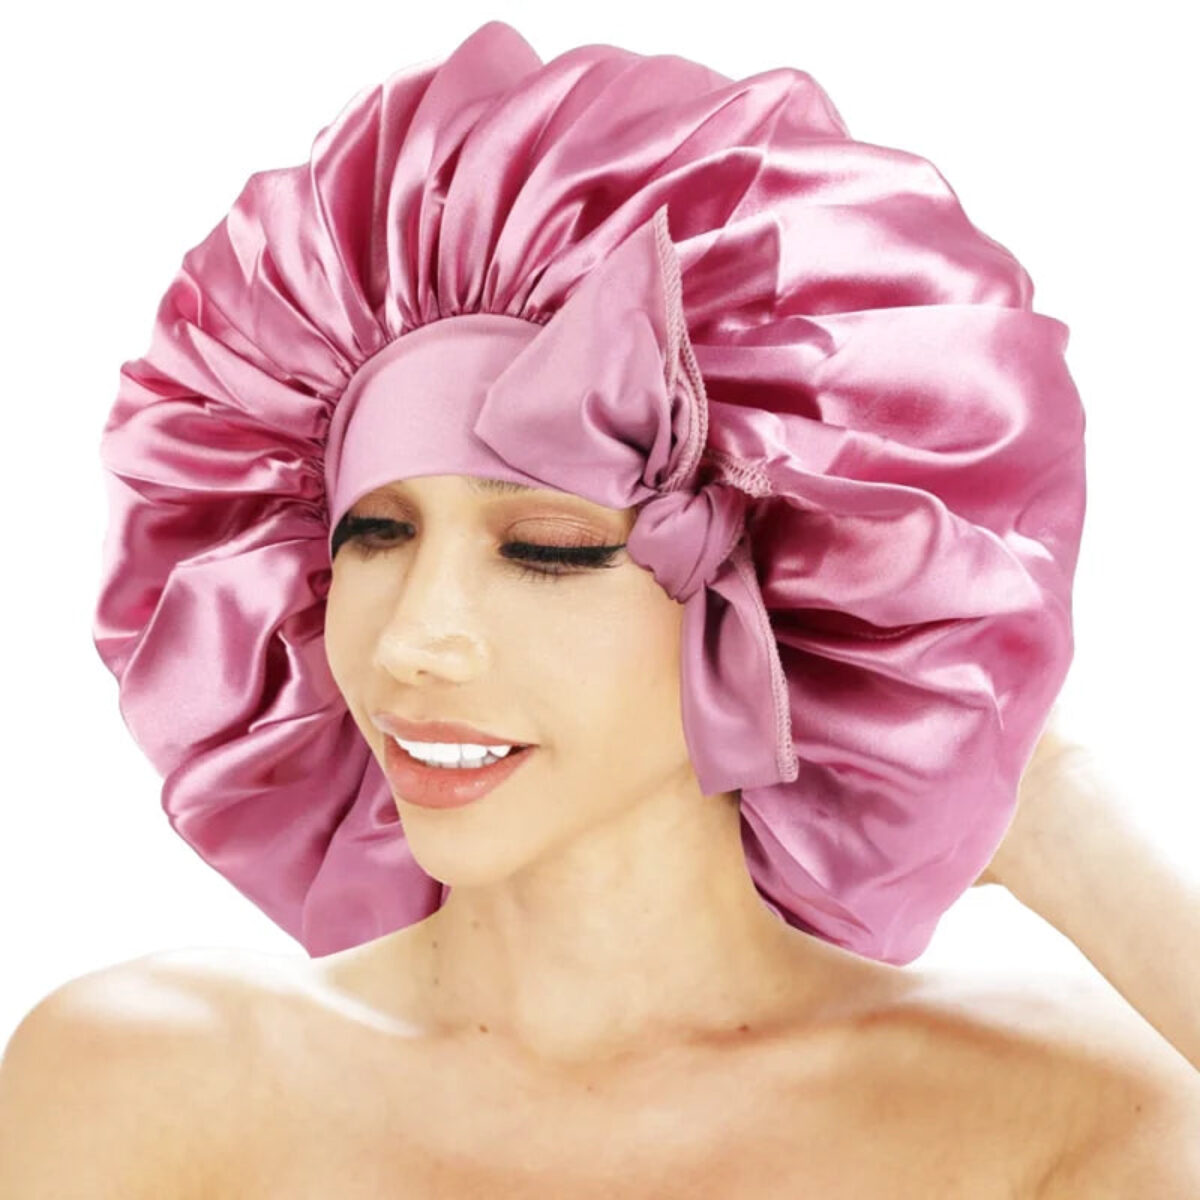 Bonnet de nuit en Soie - Protège vos cheveux pendant votre sommeil